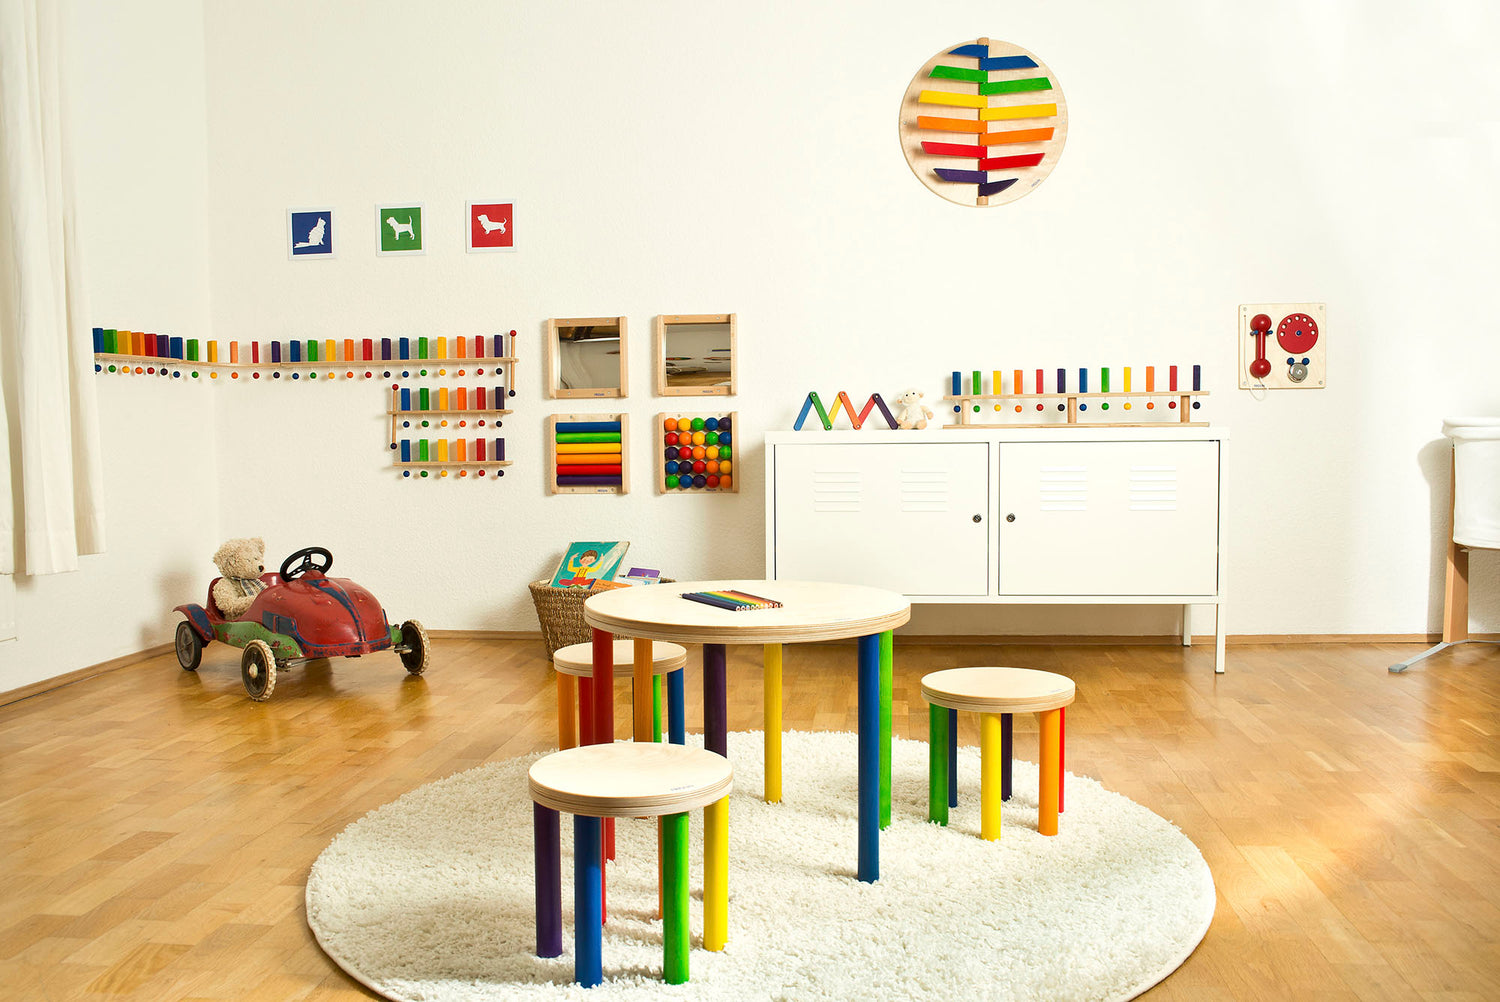 Fridlin Design Holzspielzeug und Möbel für Kinderzimmer, Kinderbetreuung, Kleinkindbeschäftigung. Perfekt für Spielzimmer und Wartebereiche.